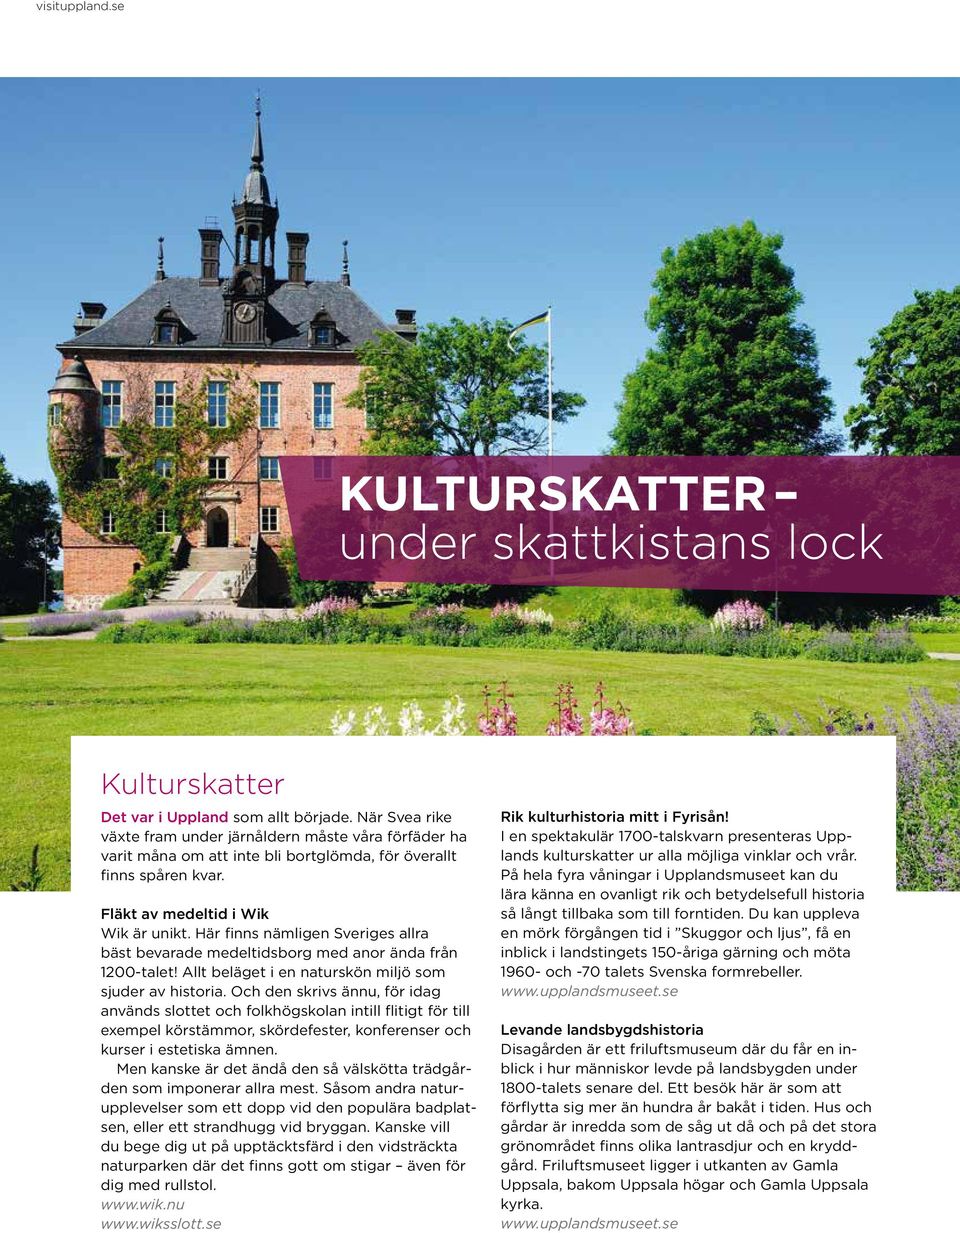 Här finns nämligen Sveriges allra bäst bevarade medeltidsborg med anor ända från 1200-talet! Allt beläget i en naturskön miljö som sjuder av historia.